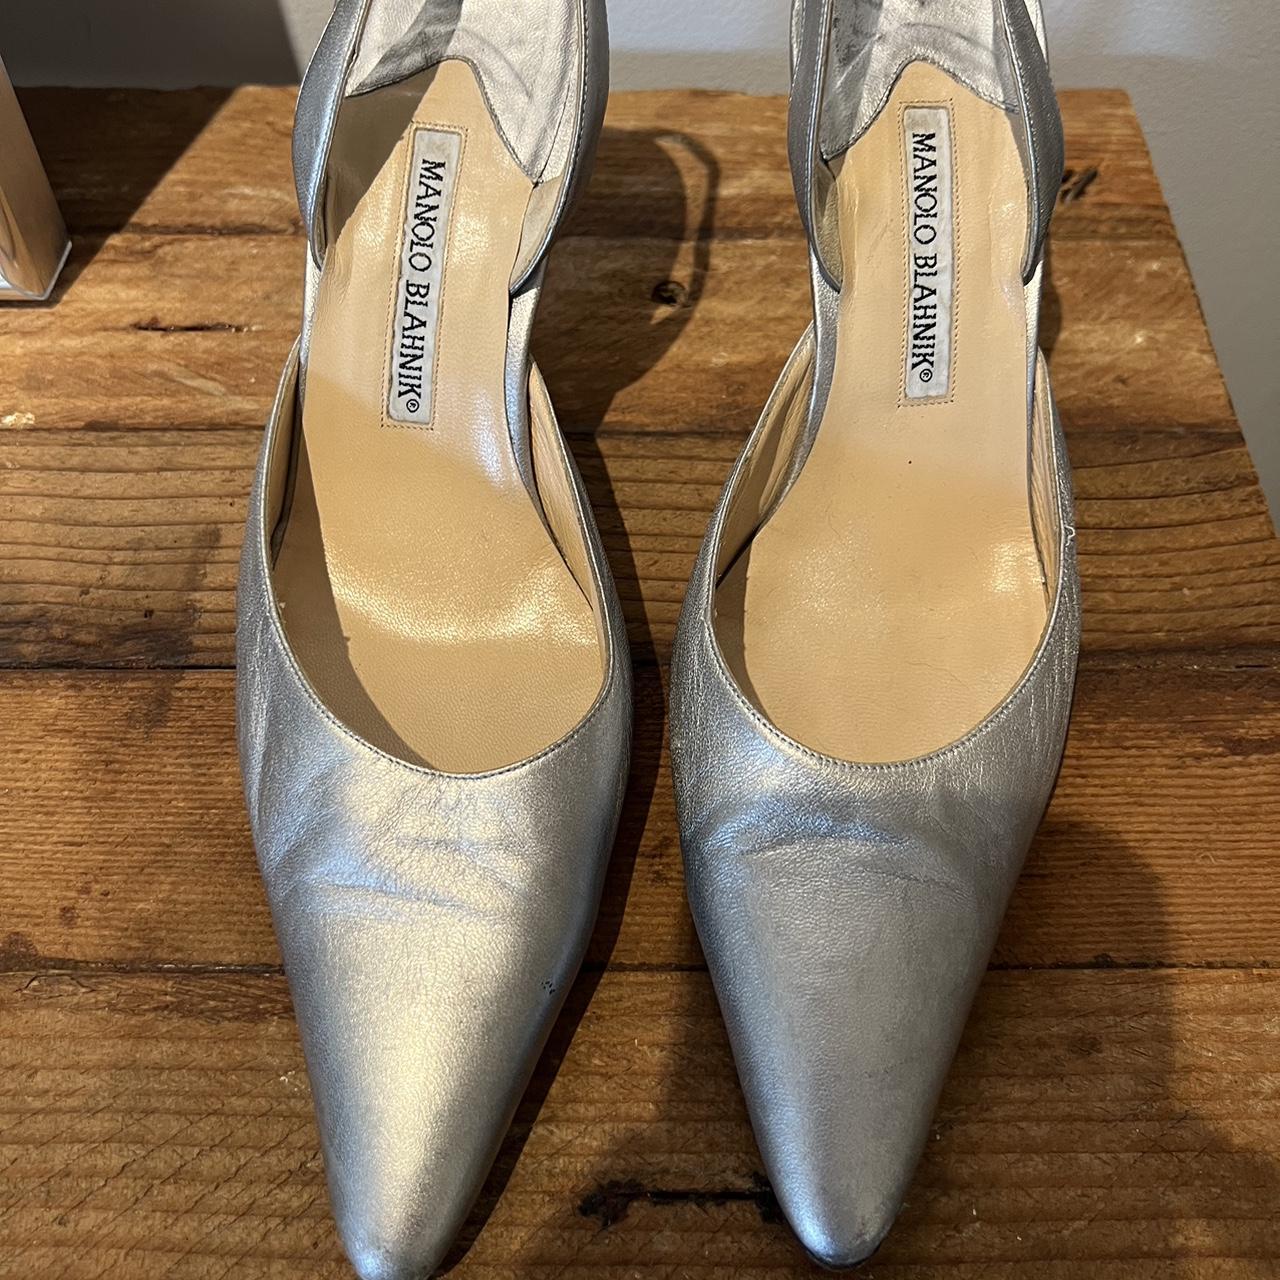 Vintage silver Manolo Blahnik sling back heels!... - Depop